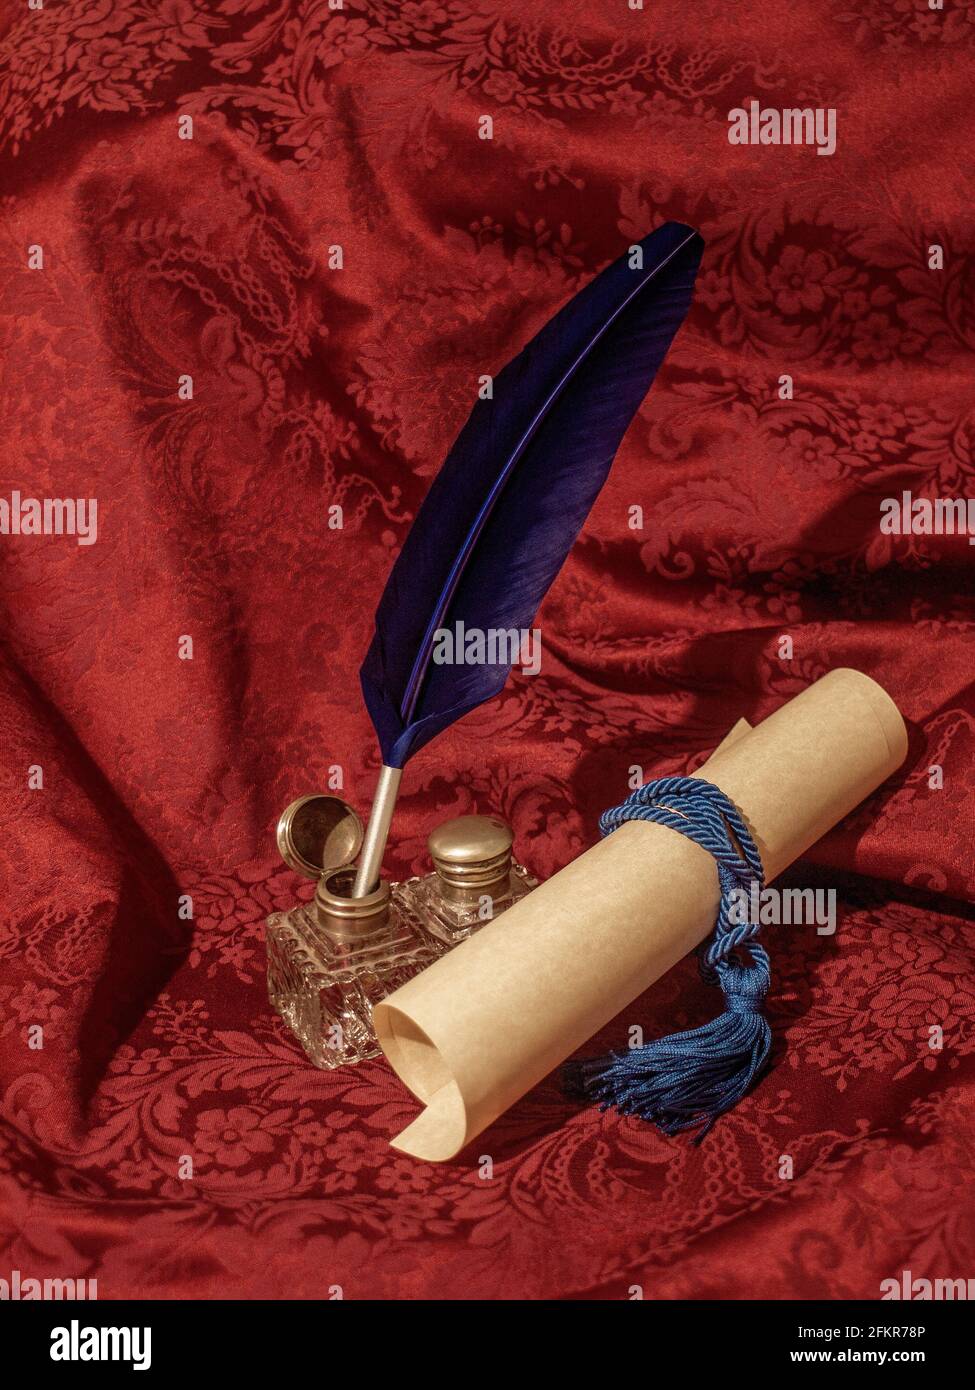 bleu quill, verre inkwell et parchemin sur un tissu damassé rouge, dans une photo qui vous ramène dans le temps Banque D'Images